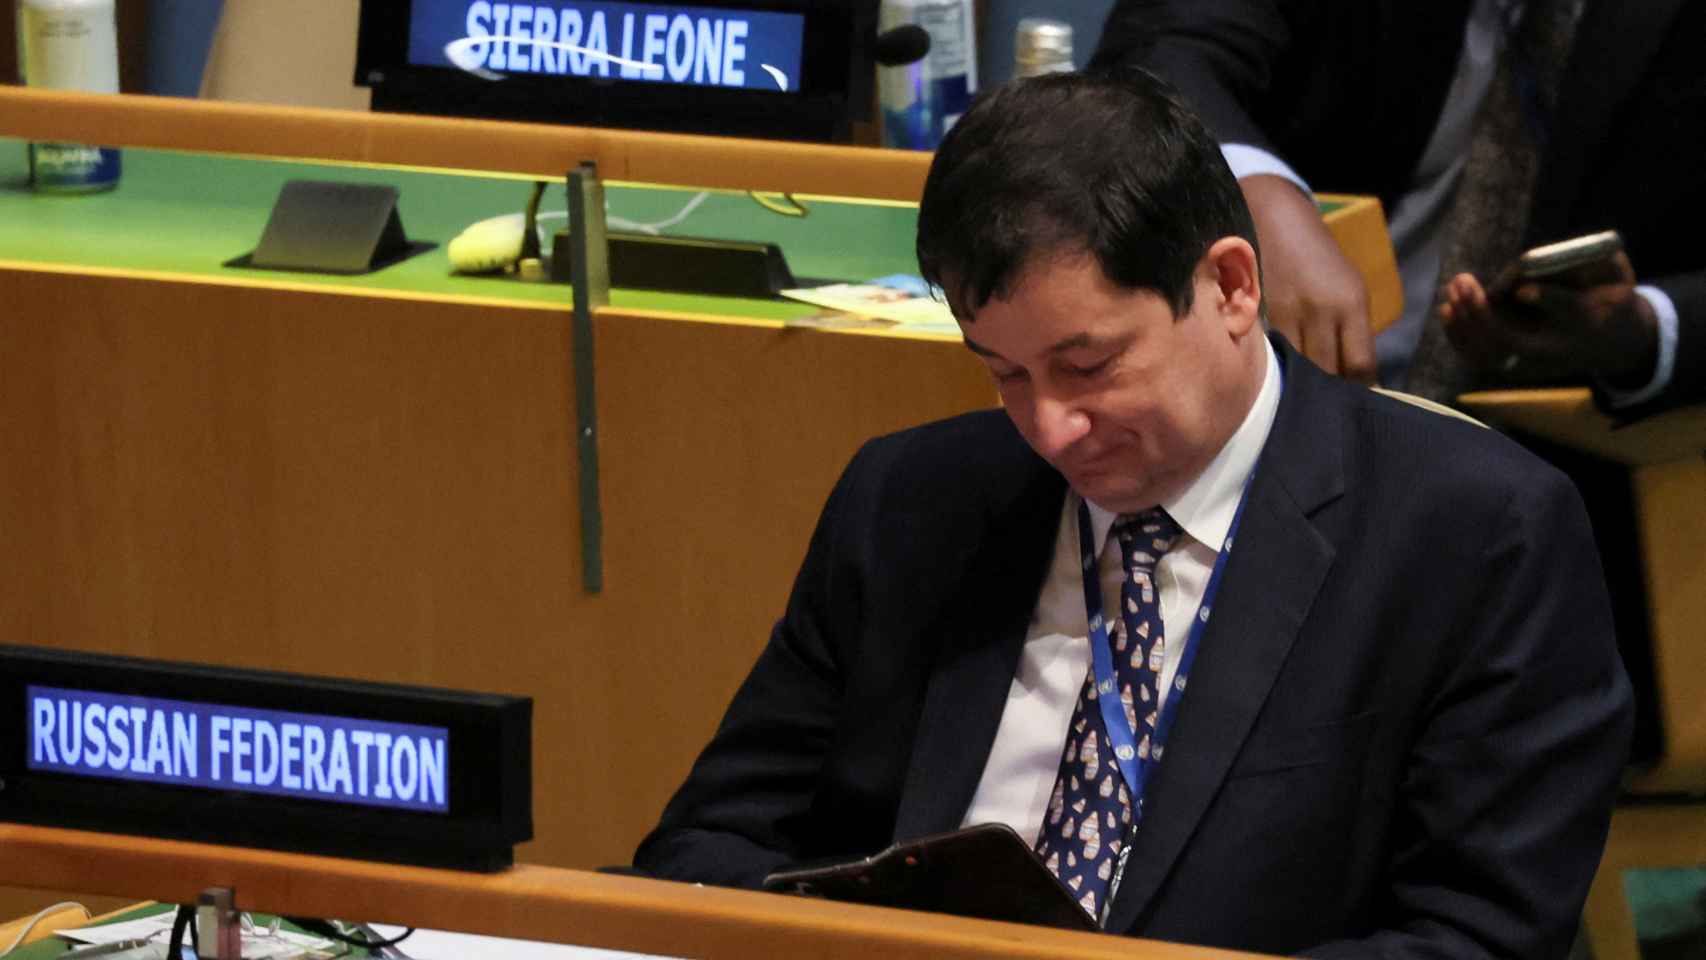 El embajador adjunto de Rusia ante la ONU, Dmitry Polyanskiy, mirando su móvil durante el discurso de Zelenski.